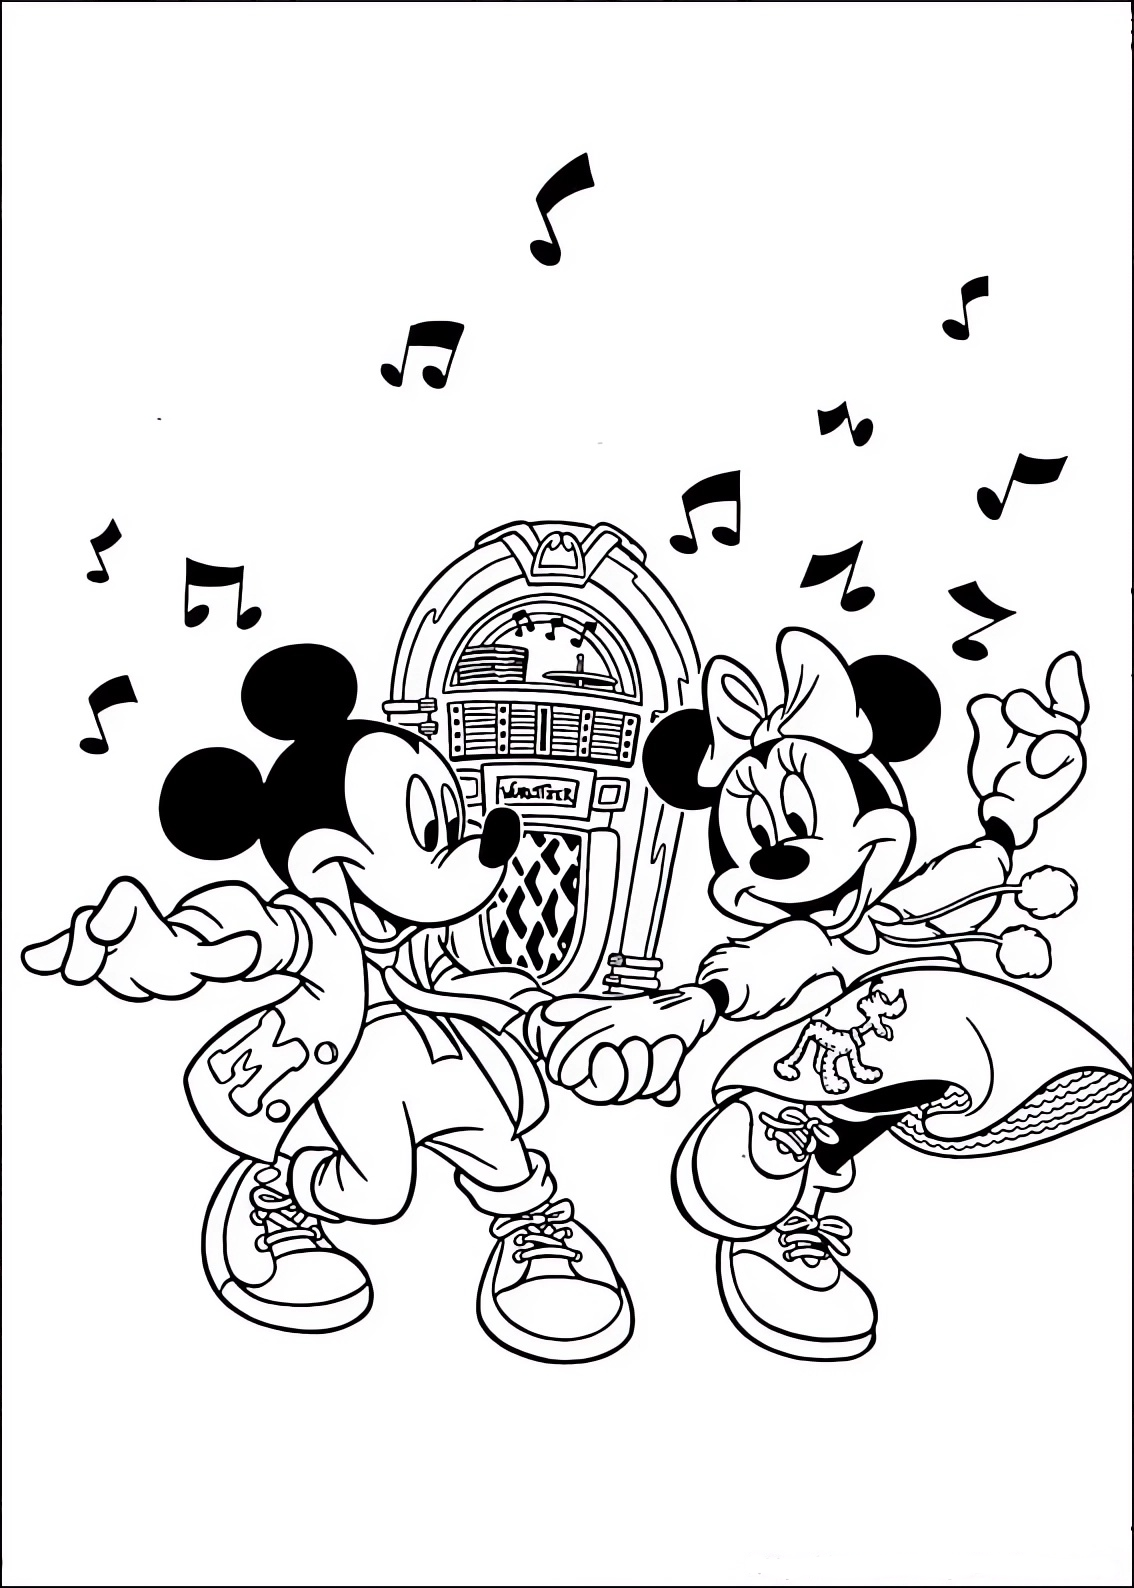 Malvorlage von Minnie und Mickey Mouse, die Rock 'n Roll tanzen